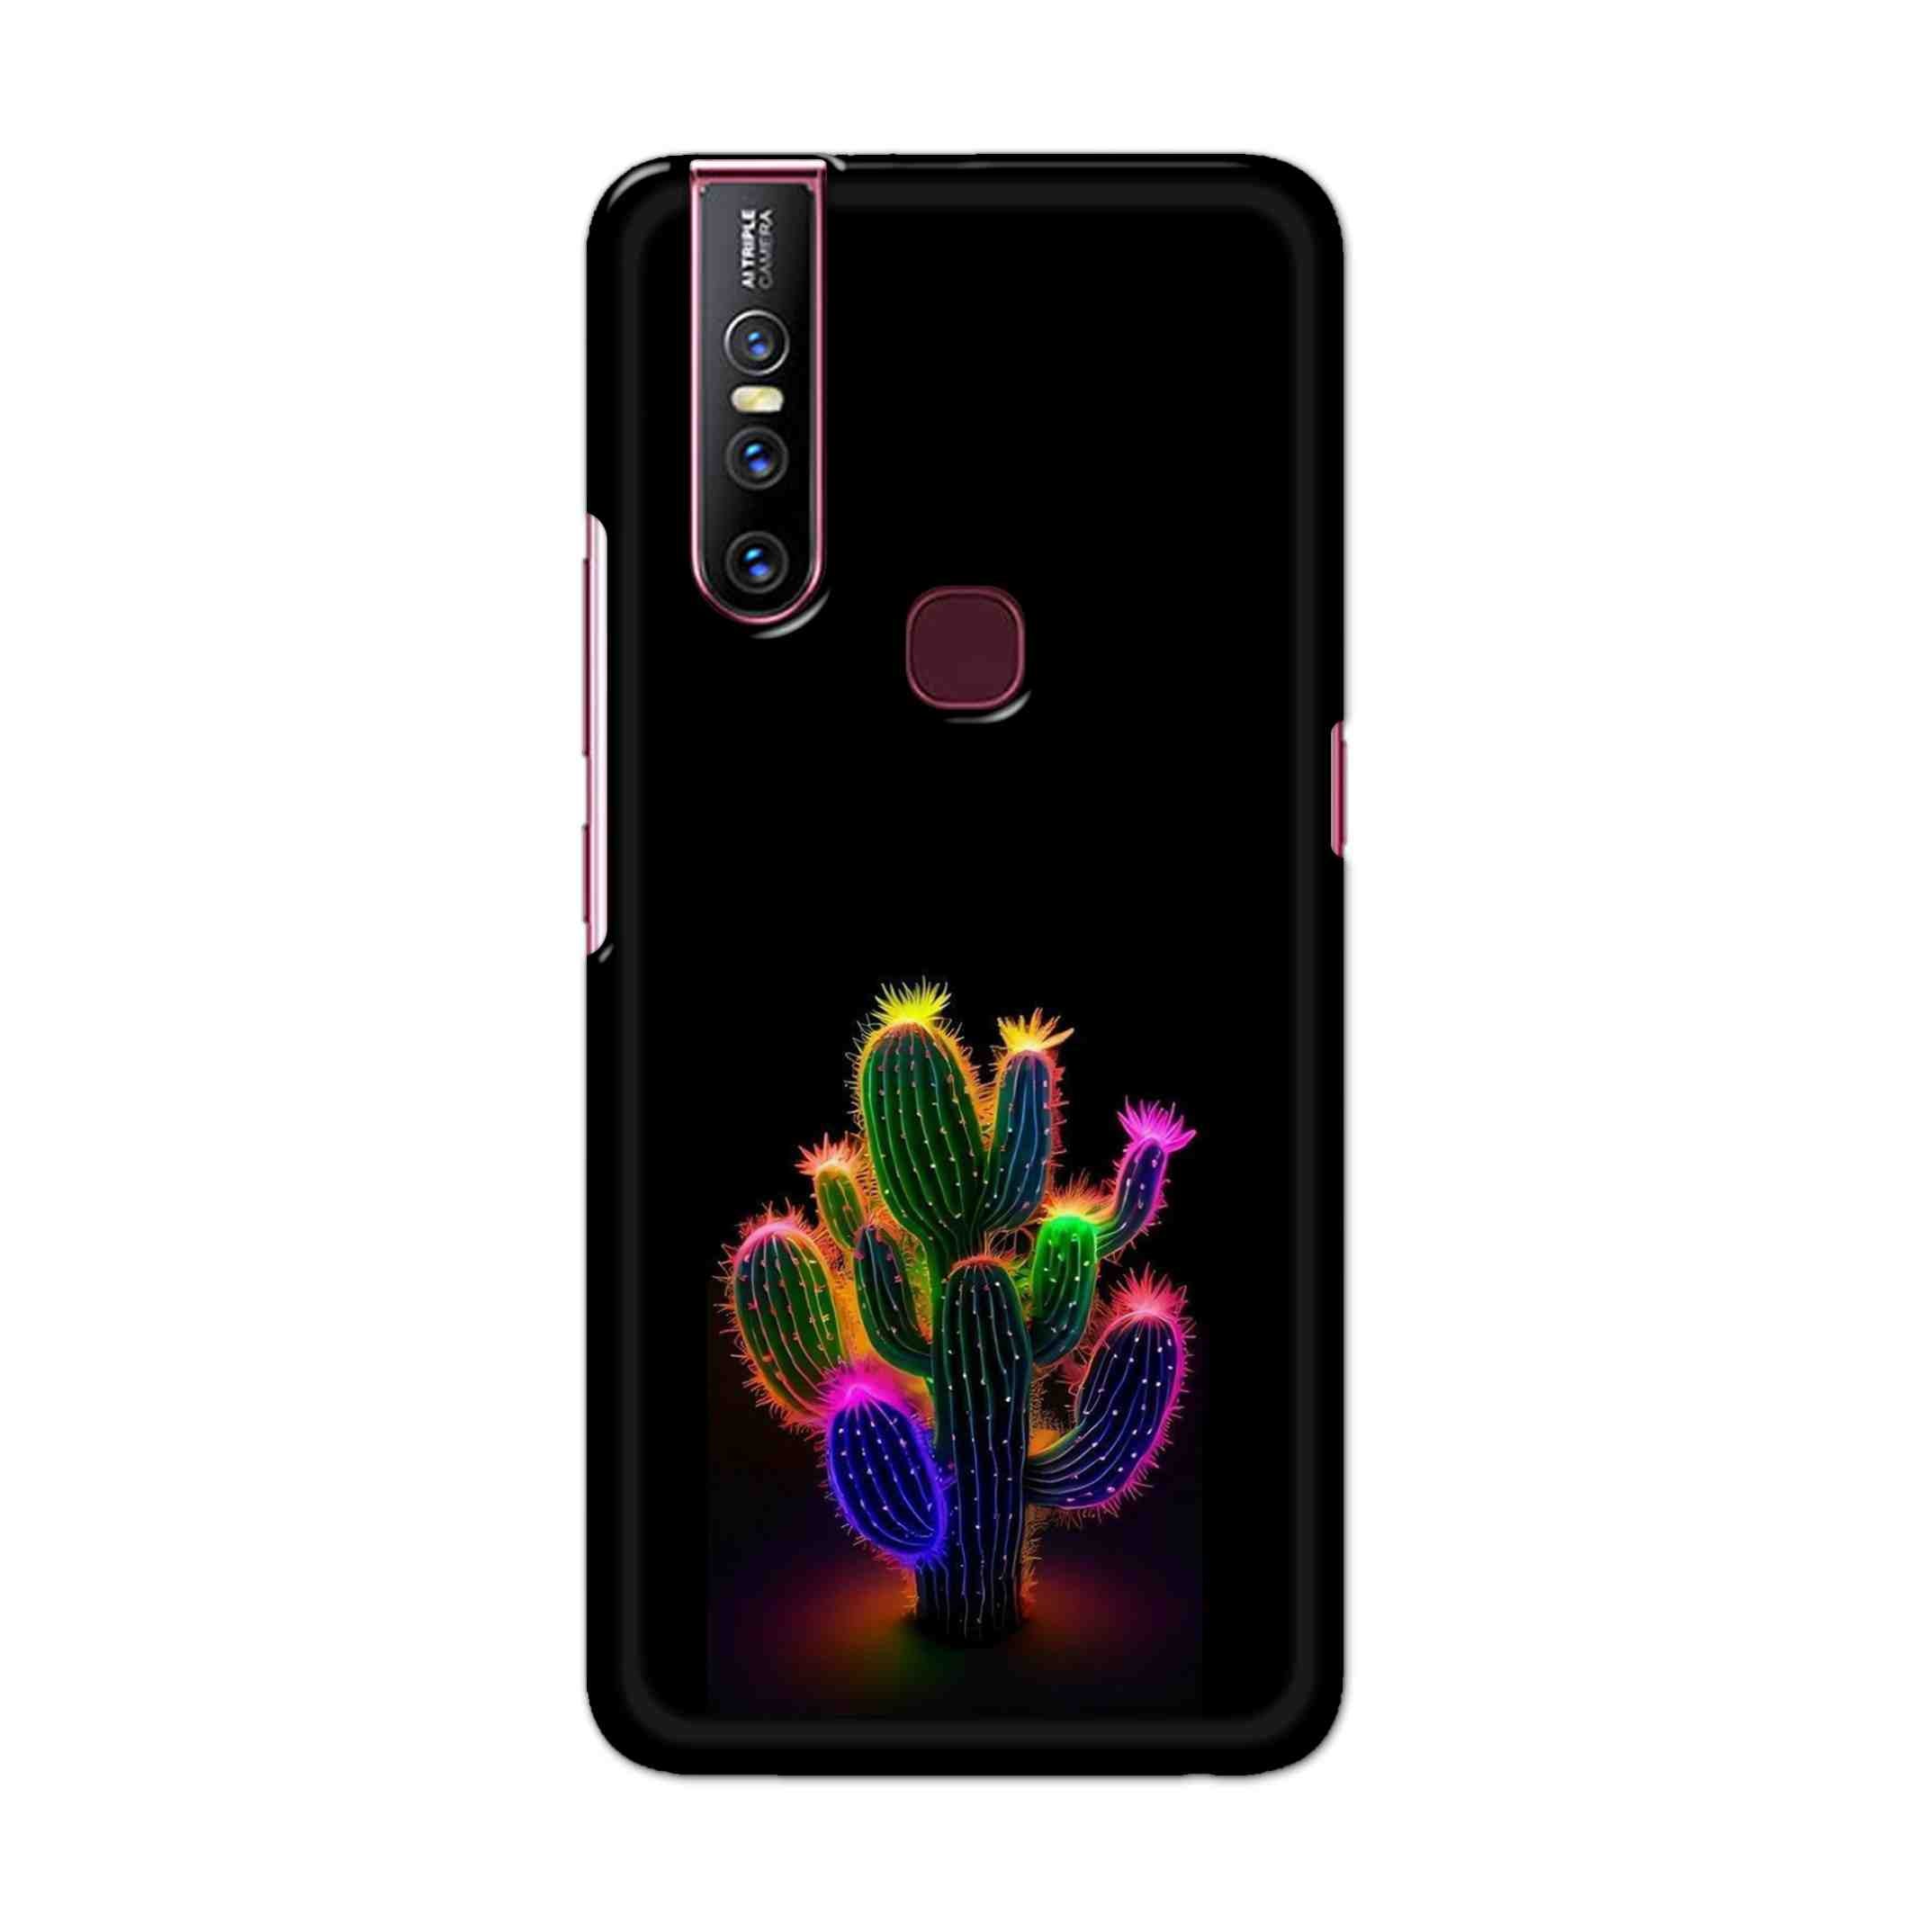 Buy Neon Flower Hard Back Mobile Phone Case Cover For Vivo V15 Online